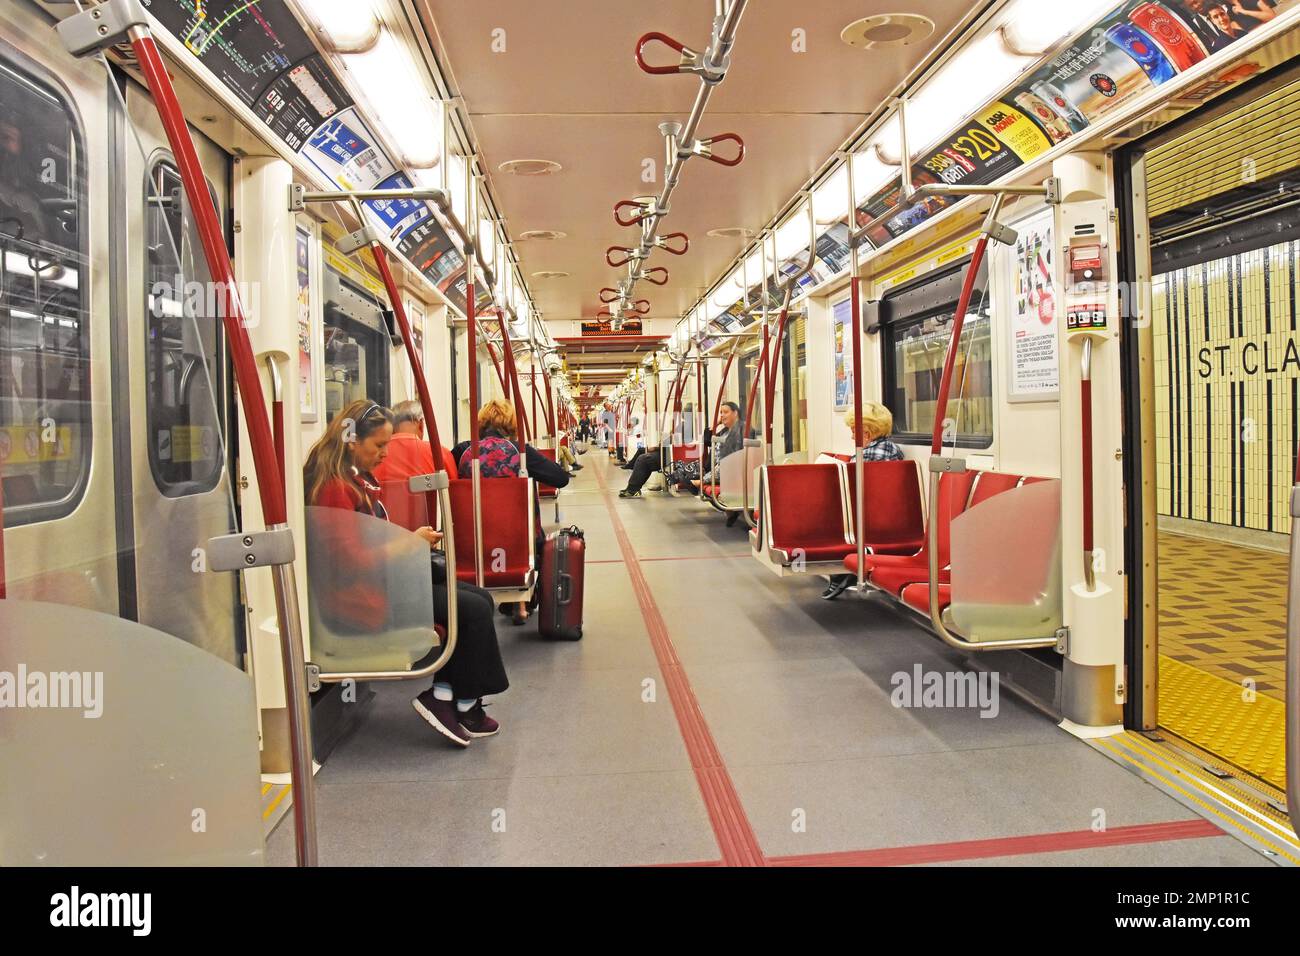 IIside a Subway train, Toronto, Canada Banque D'Images